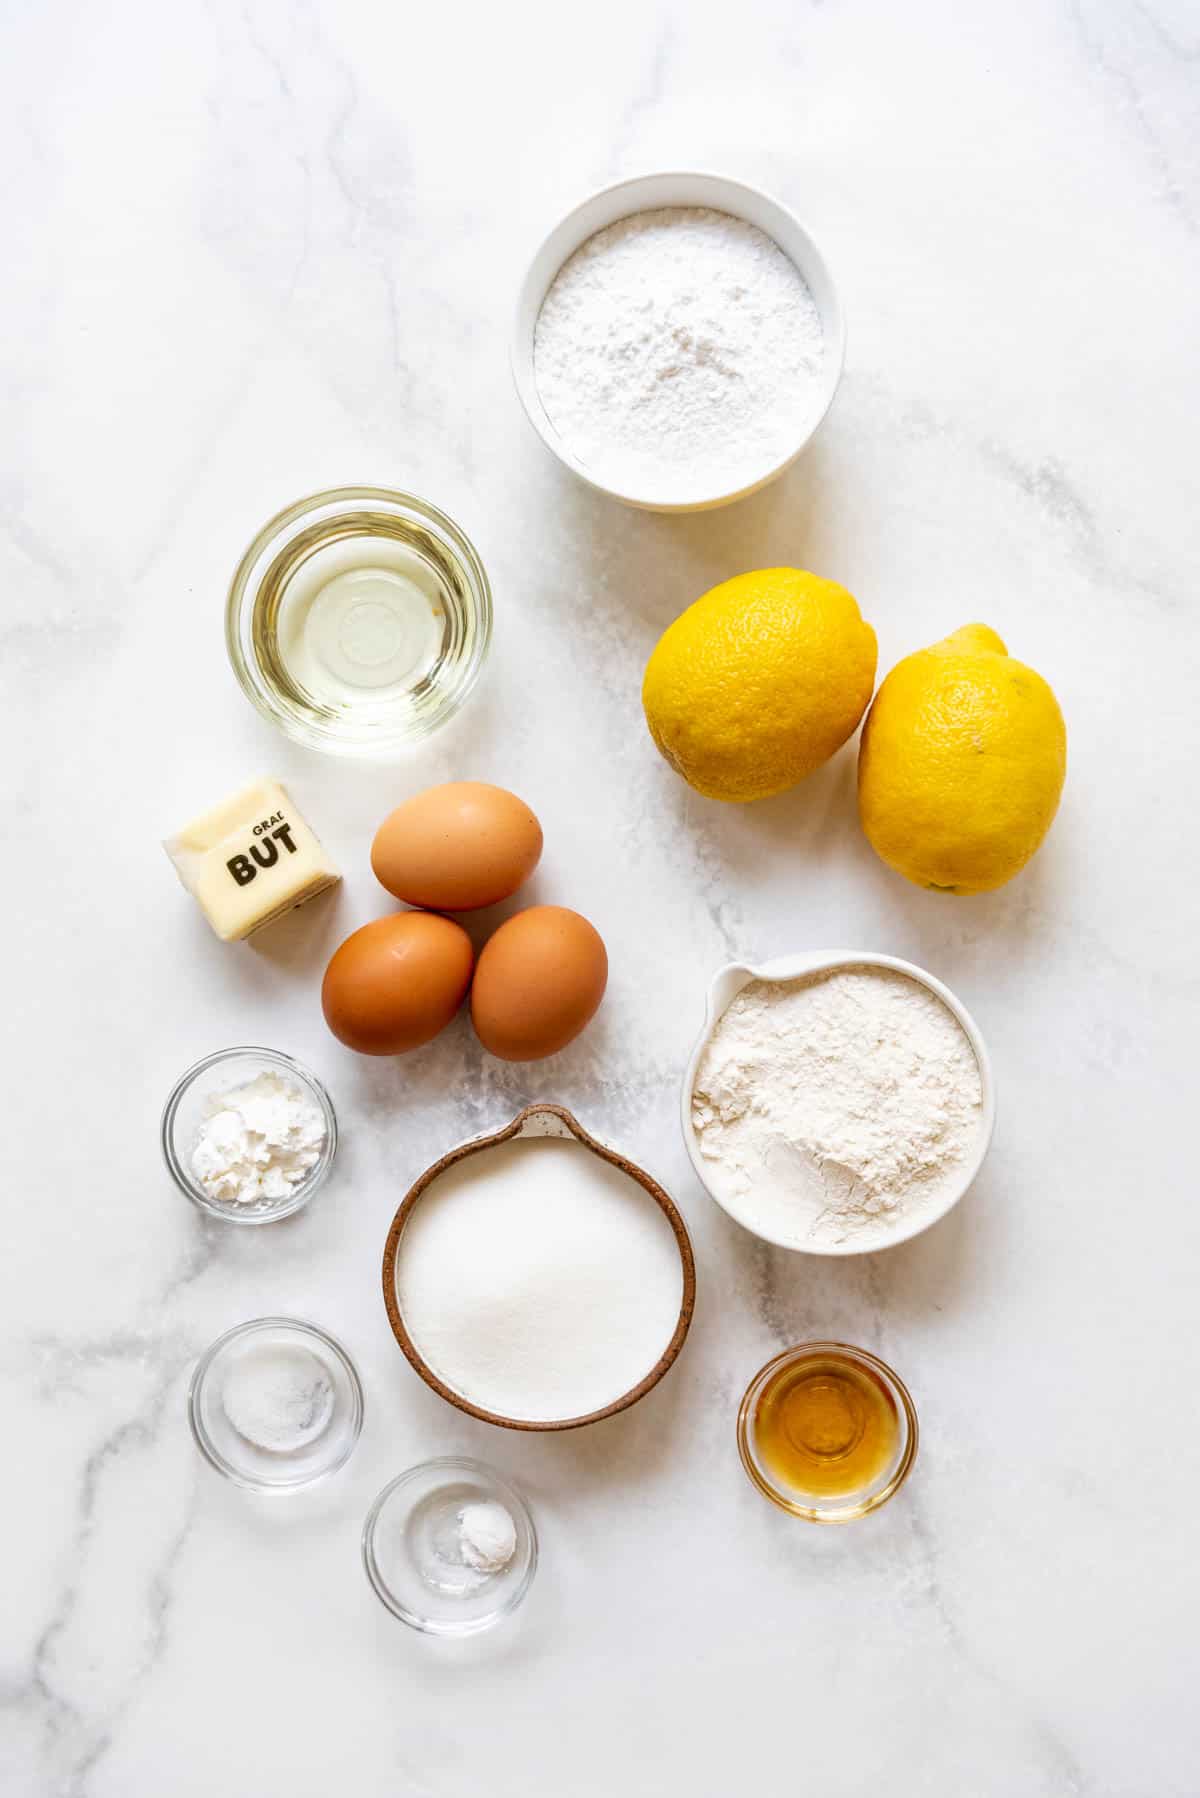 Ingredients for making lemon brownies.